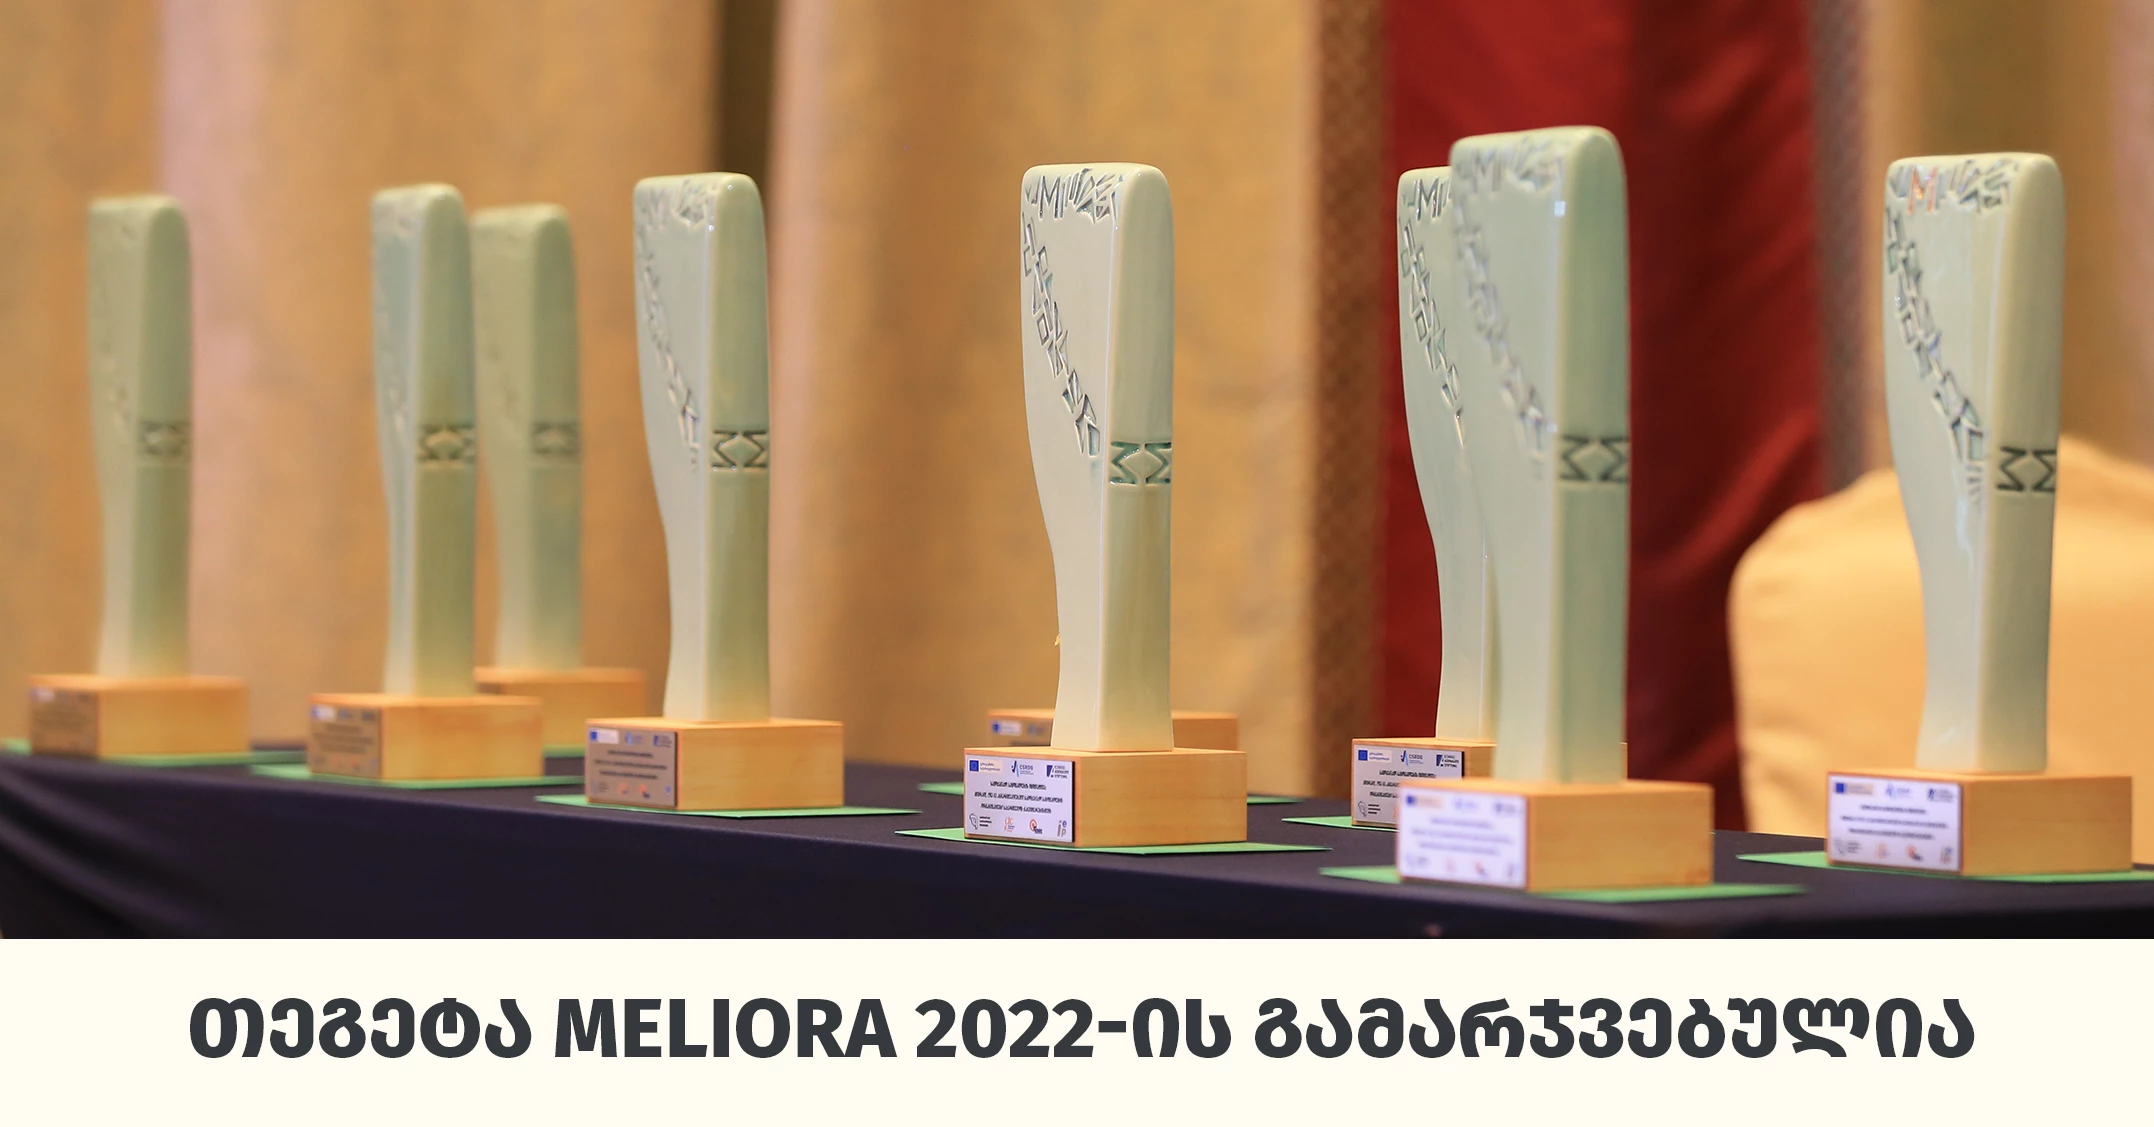 «Тегета для окружающей среды» - «Тегета Холдинг» — победитель конкурса Ответственного бизнеса Грузии Meliora 2022